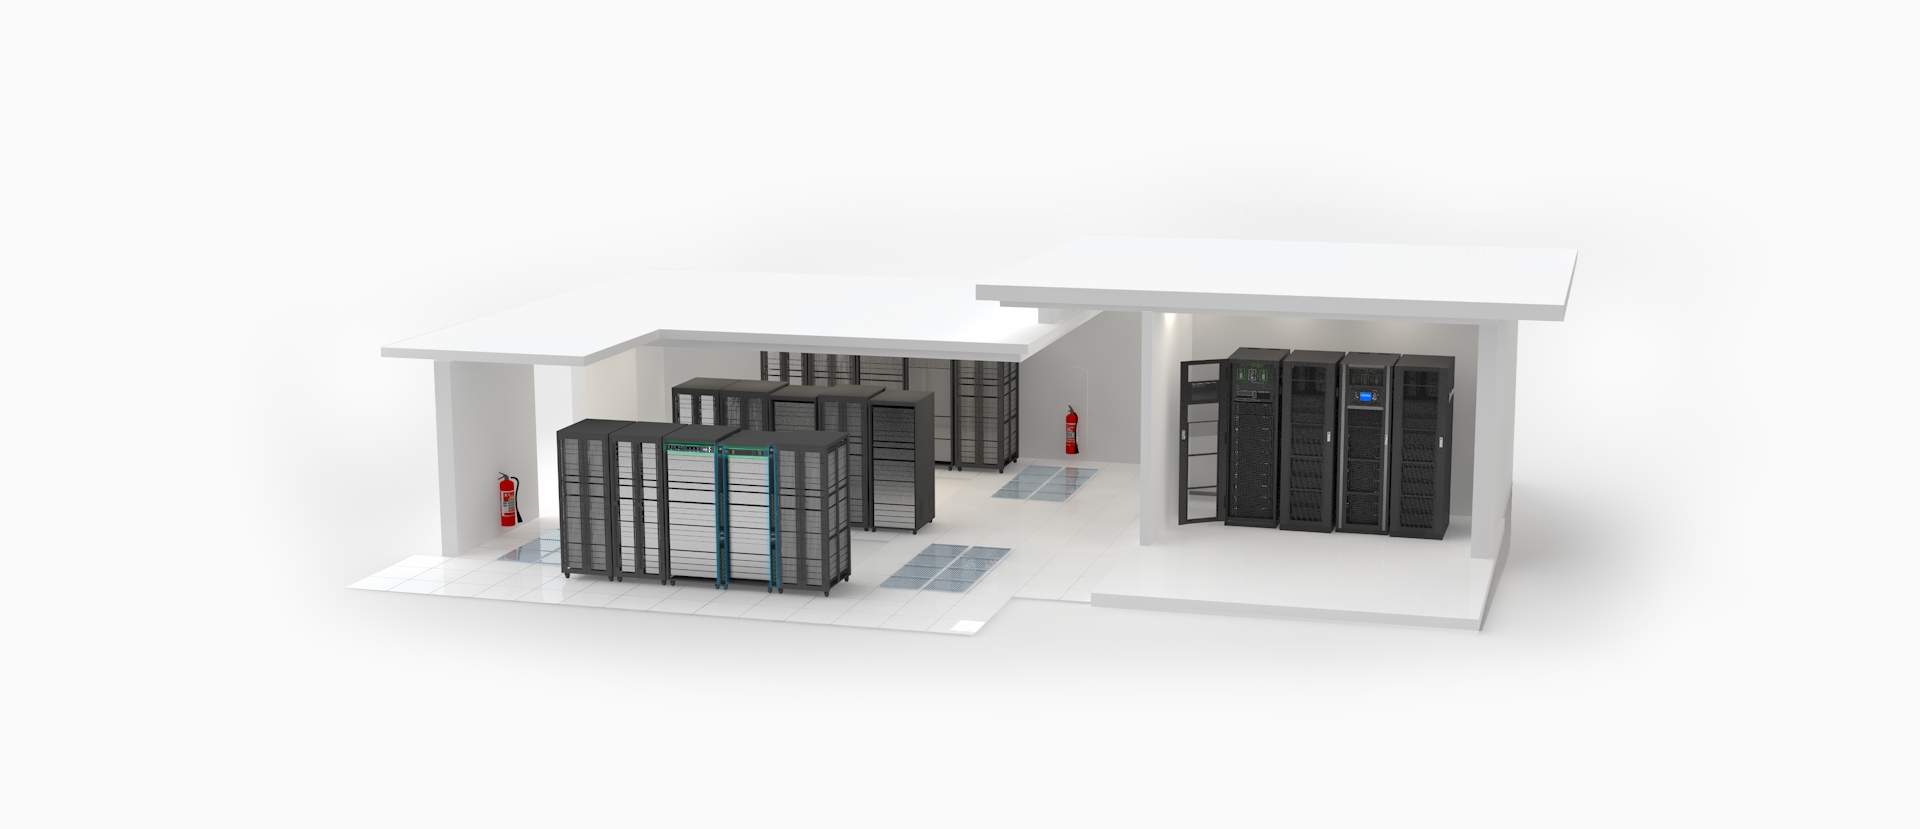 Giải pháp UPS cho hệ thống server, hệ thống giám sát ngân hàng